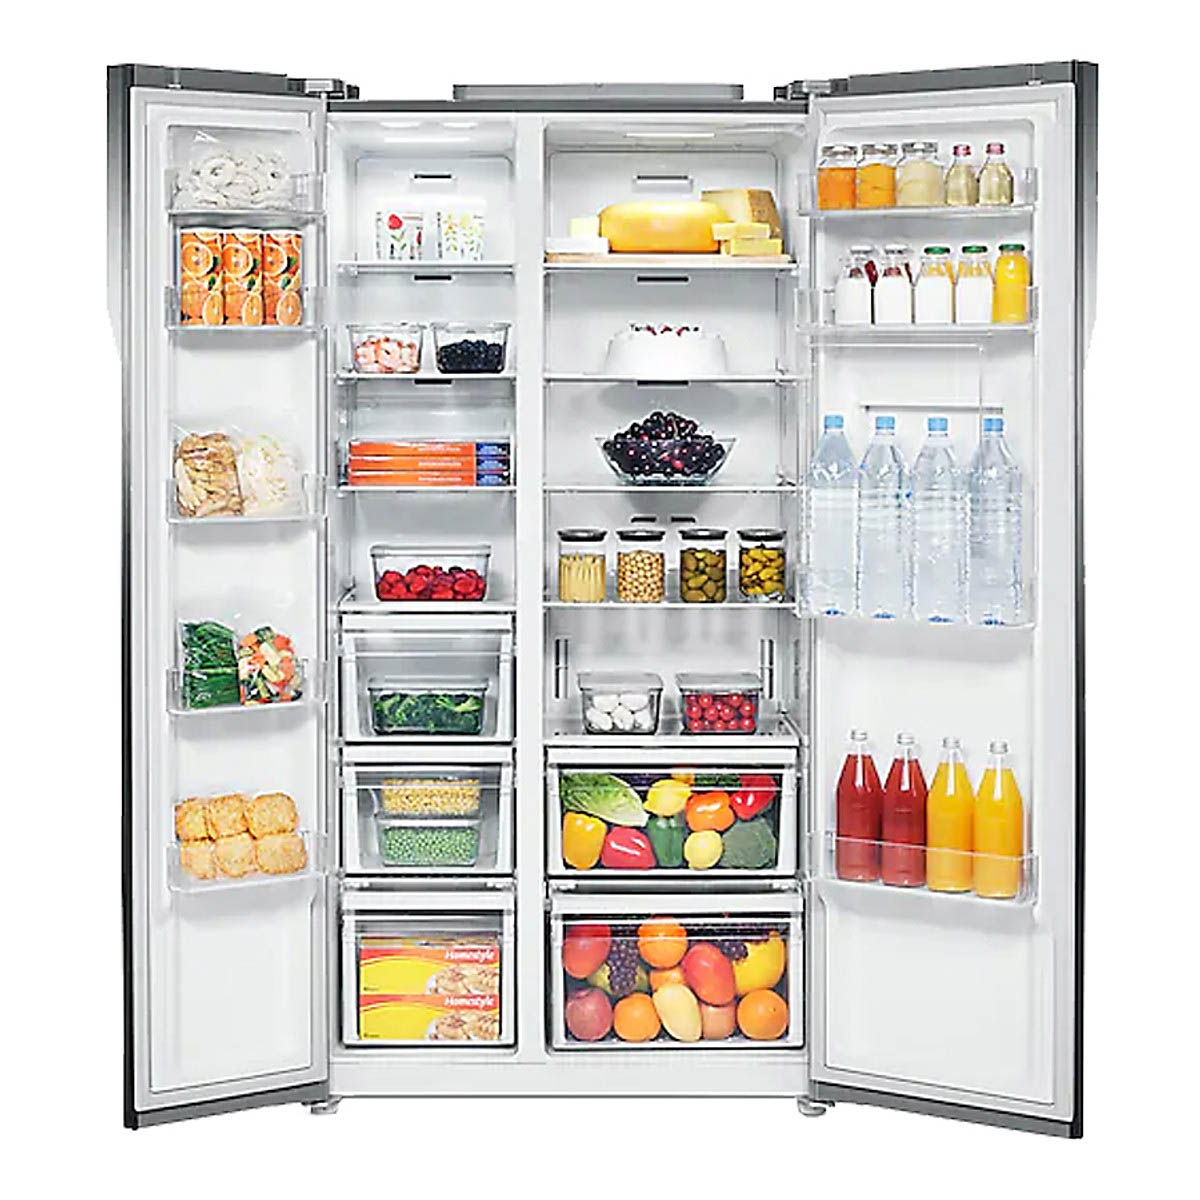 Tủ lạnh Samsung RS554NRUA1J/SV